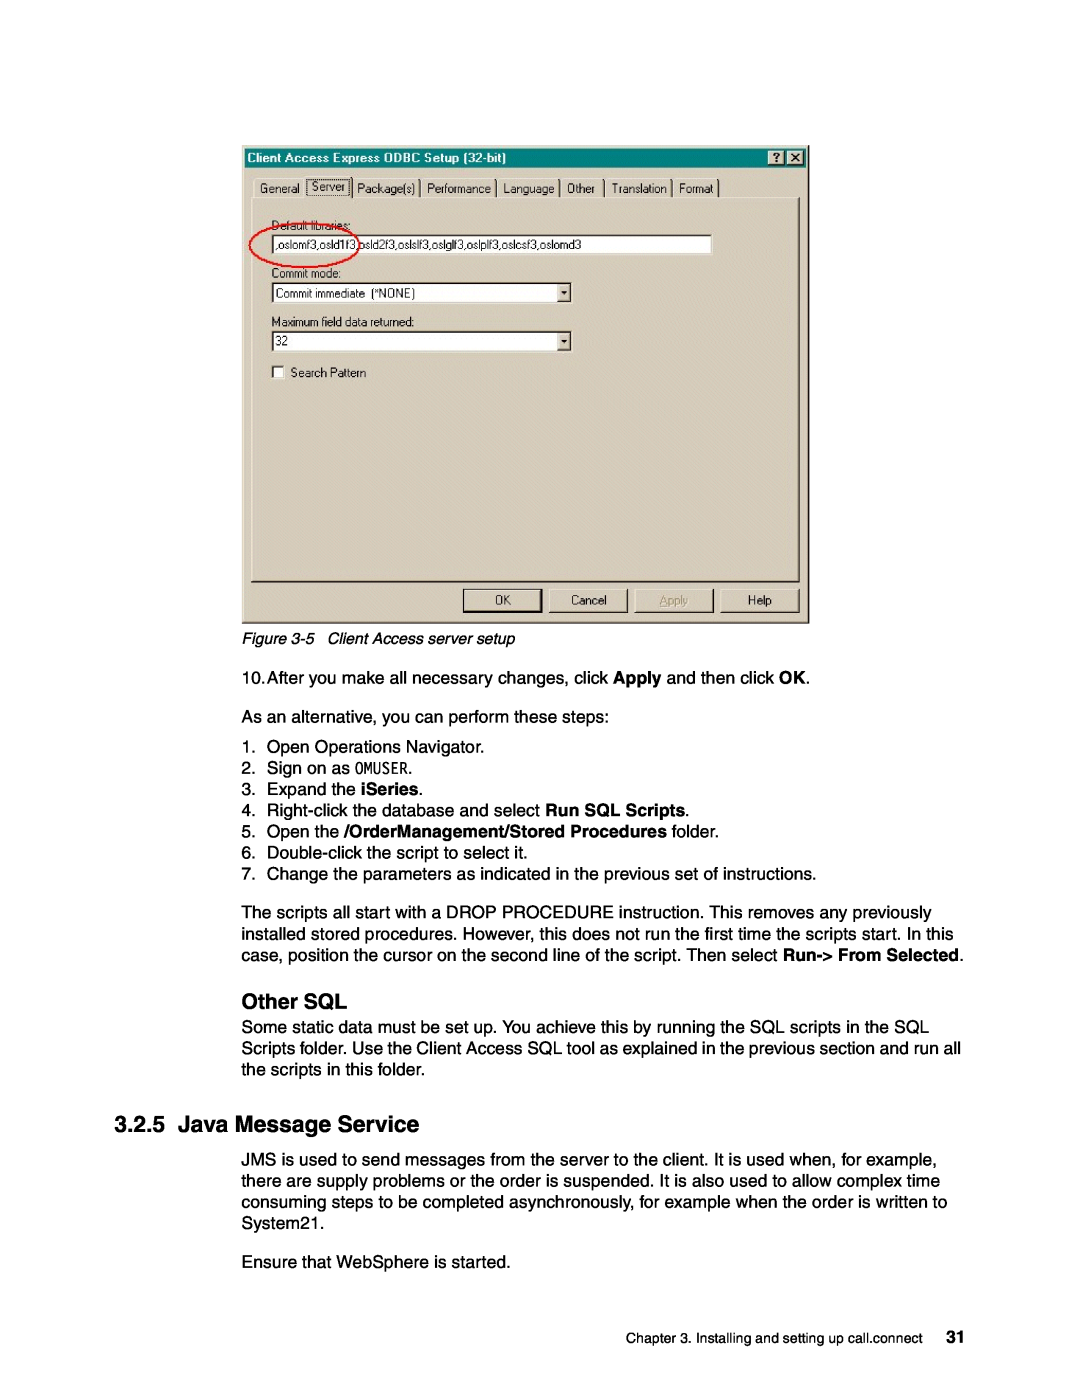 IBM SG24-6526-00 manual Java Message Service, Other SQL, Open the /OrderManagement/Stored Procedures folder 